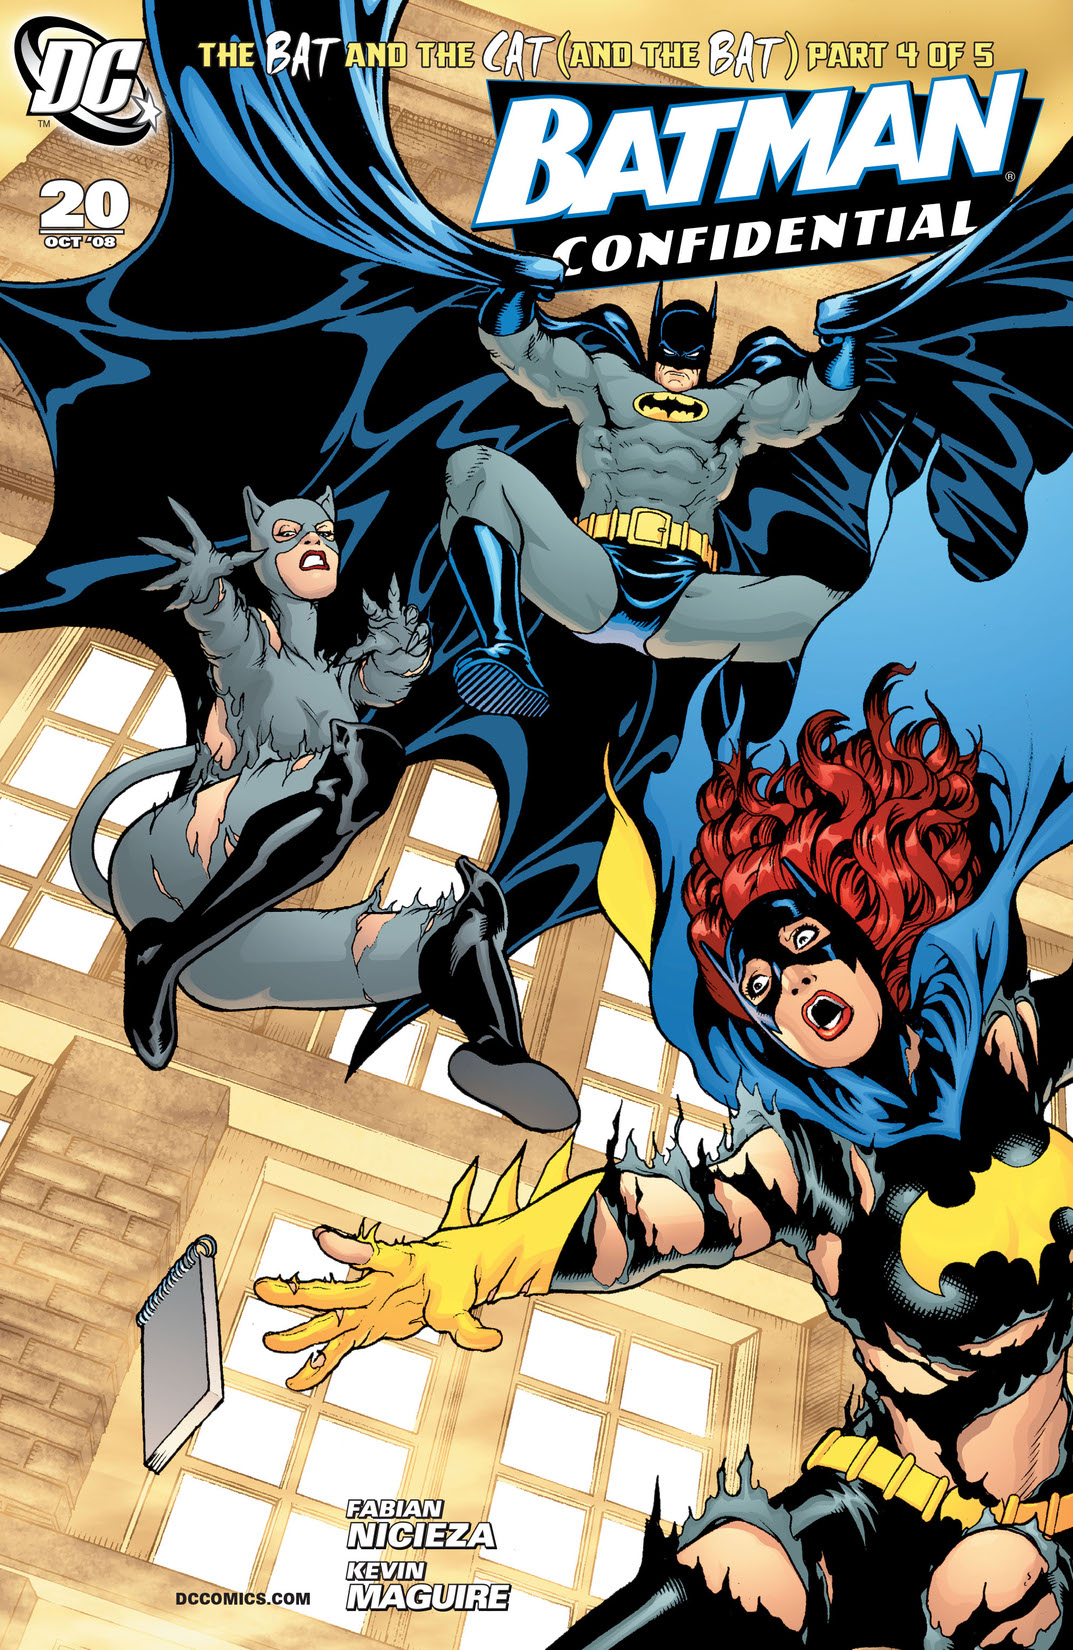 Batman Confidential #20 preview images